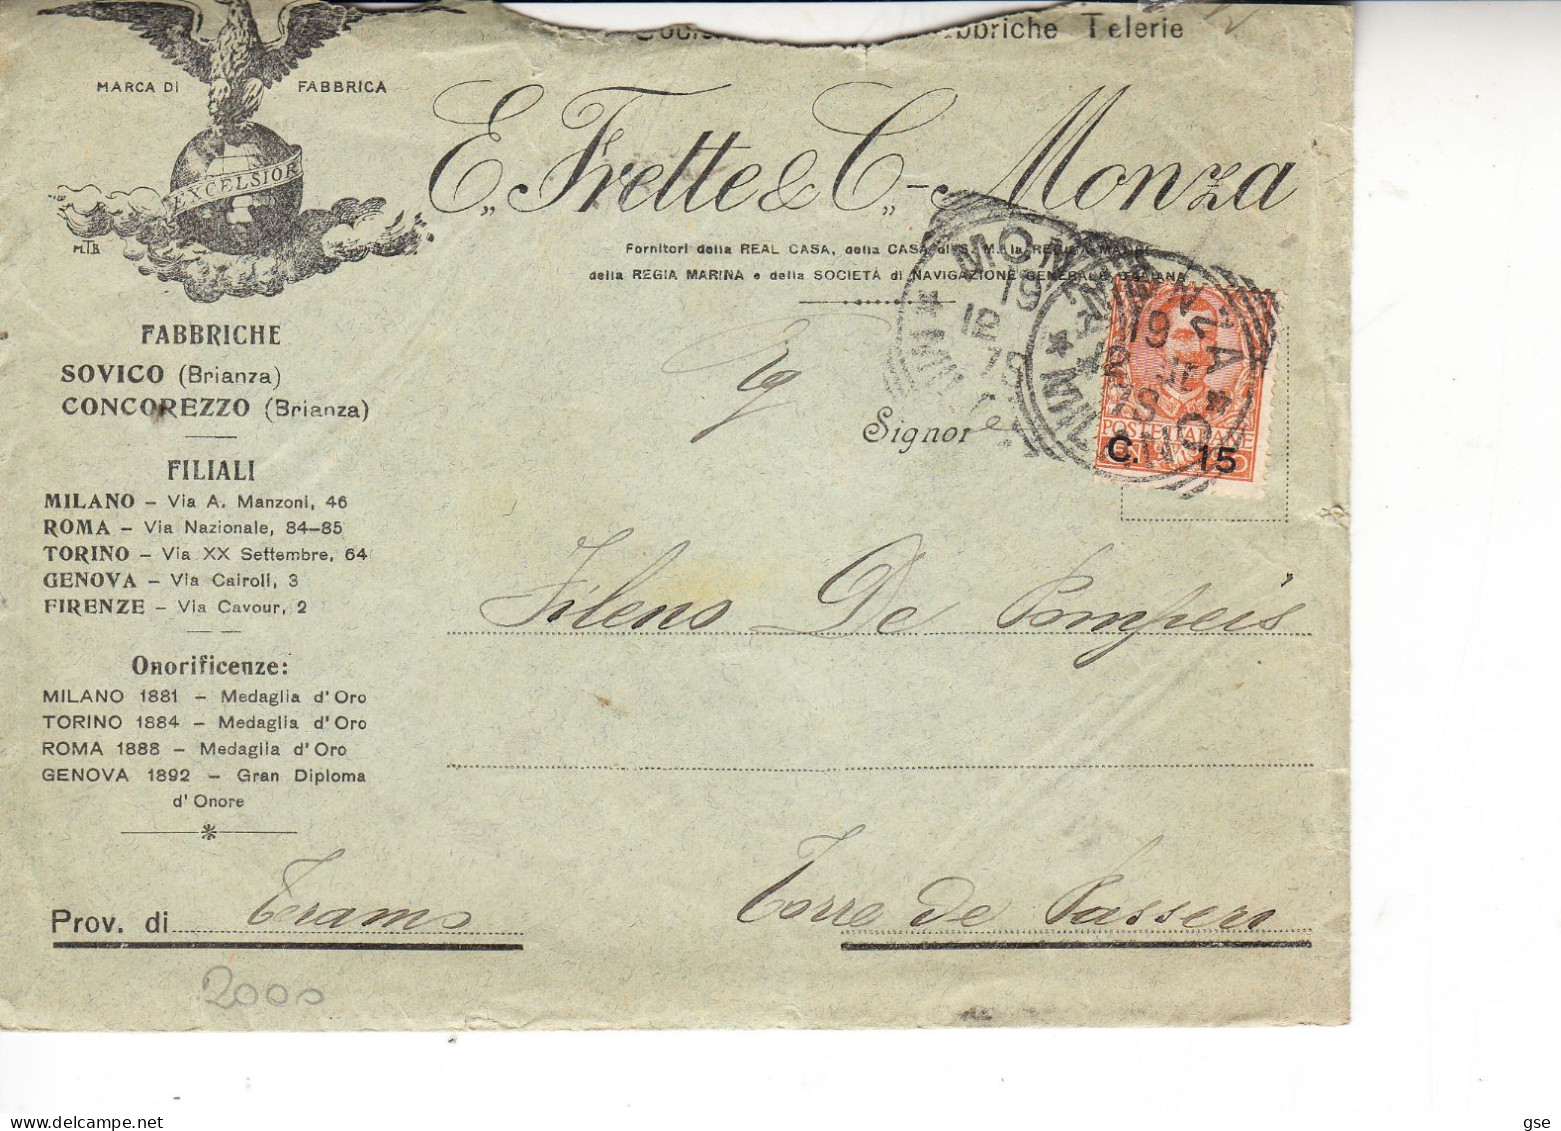 ITALIA 1902 - E. FRETTE  E C. - Monza - Publicity